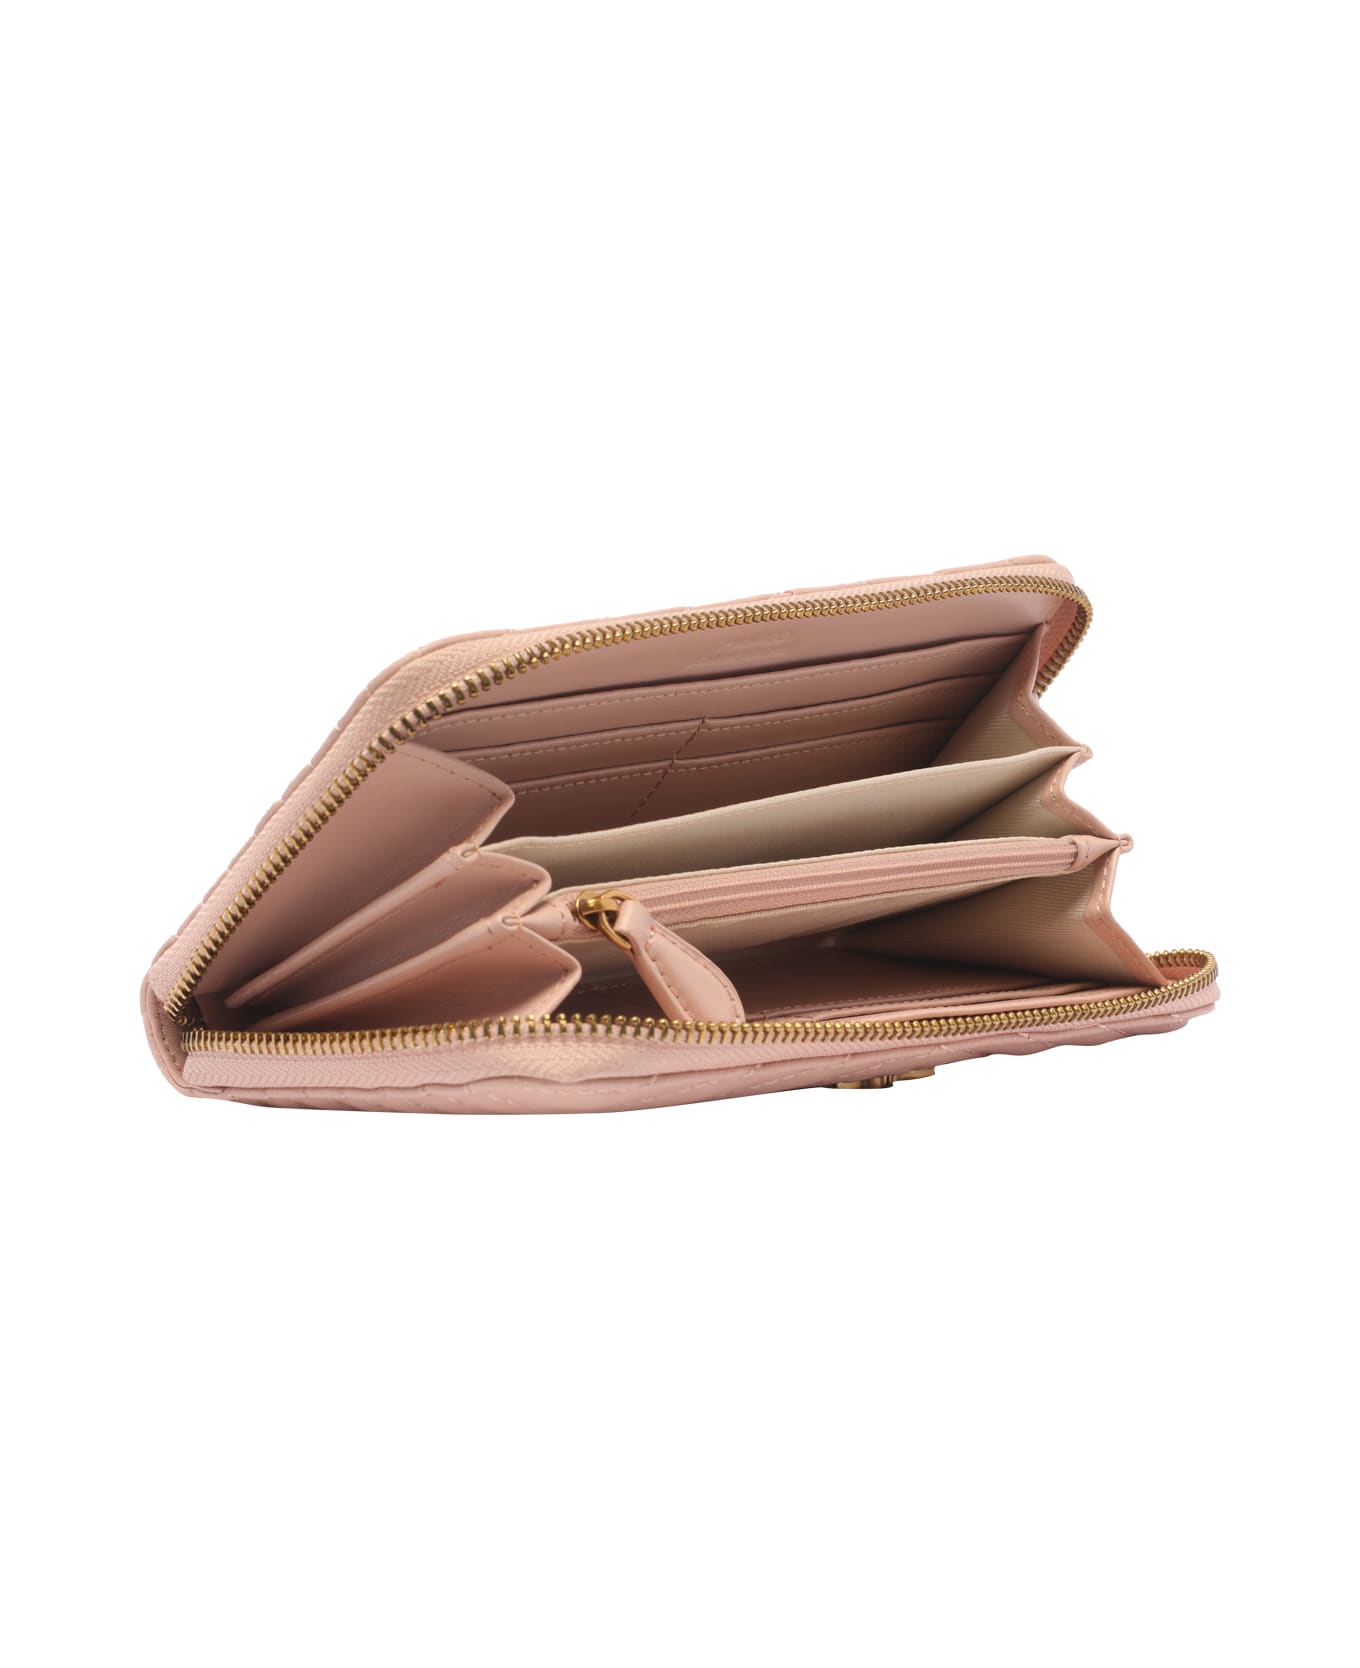 Pinko Zip Around Wallet - CIPRIA  ANTIQUE GOLD 財布